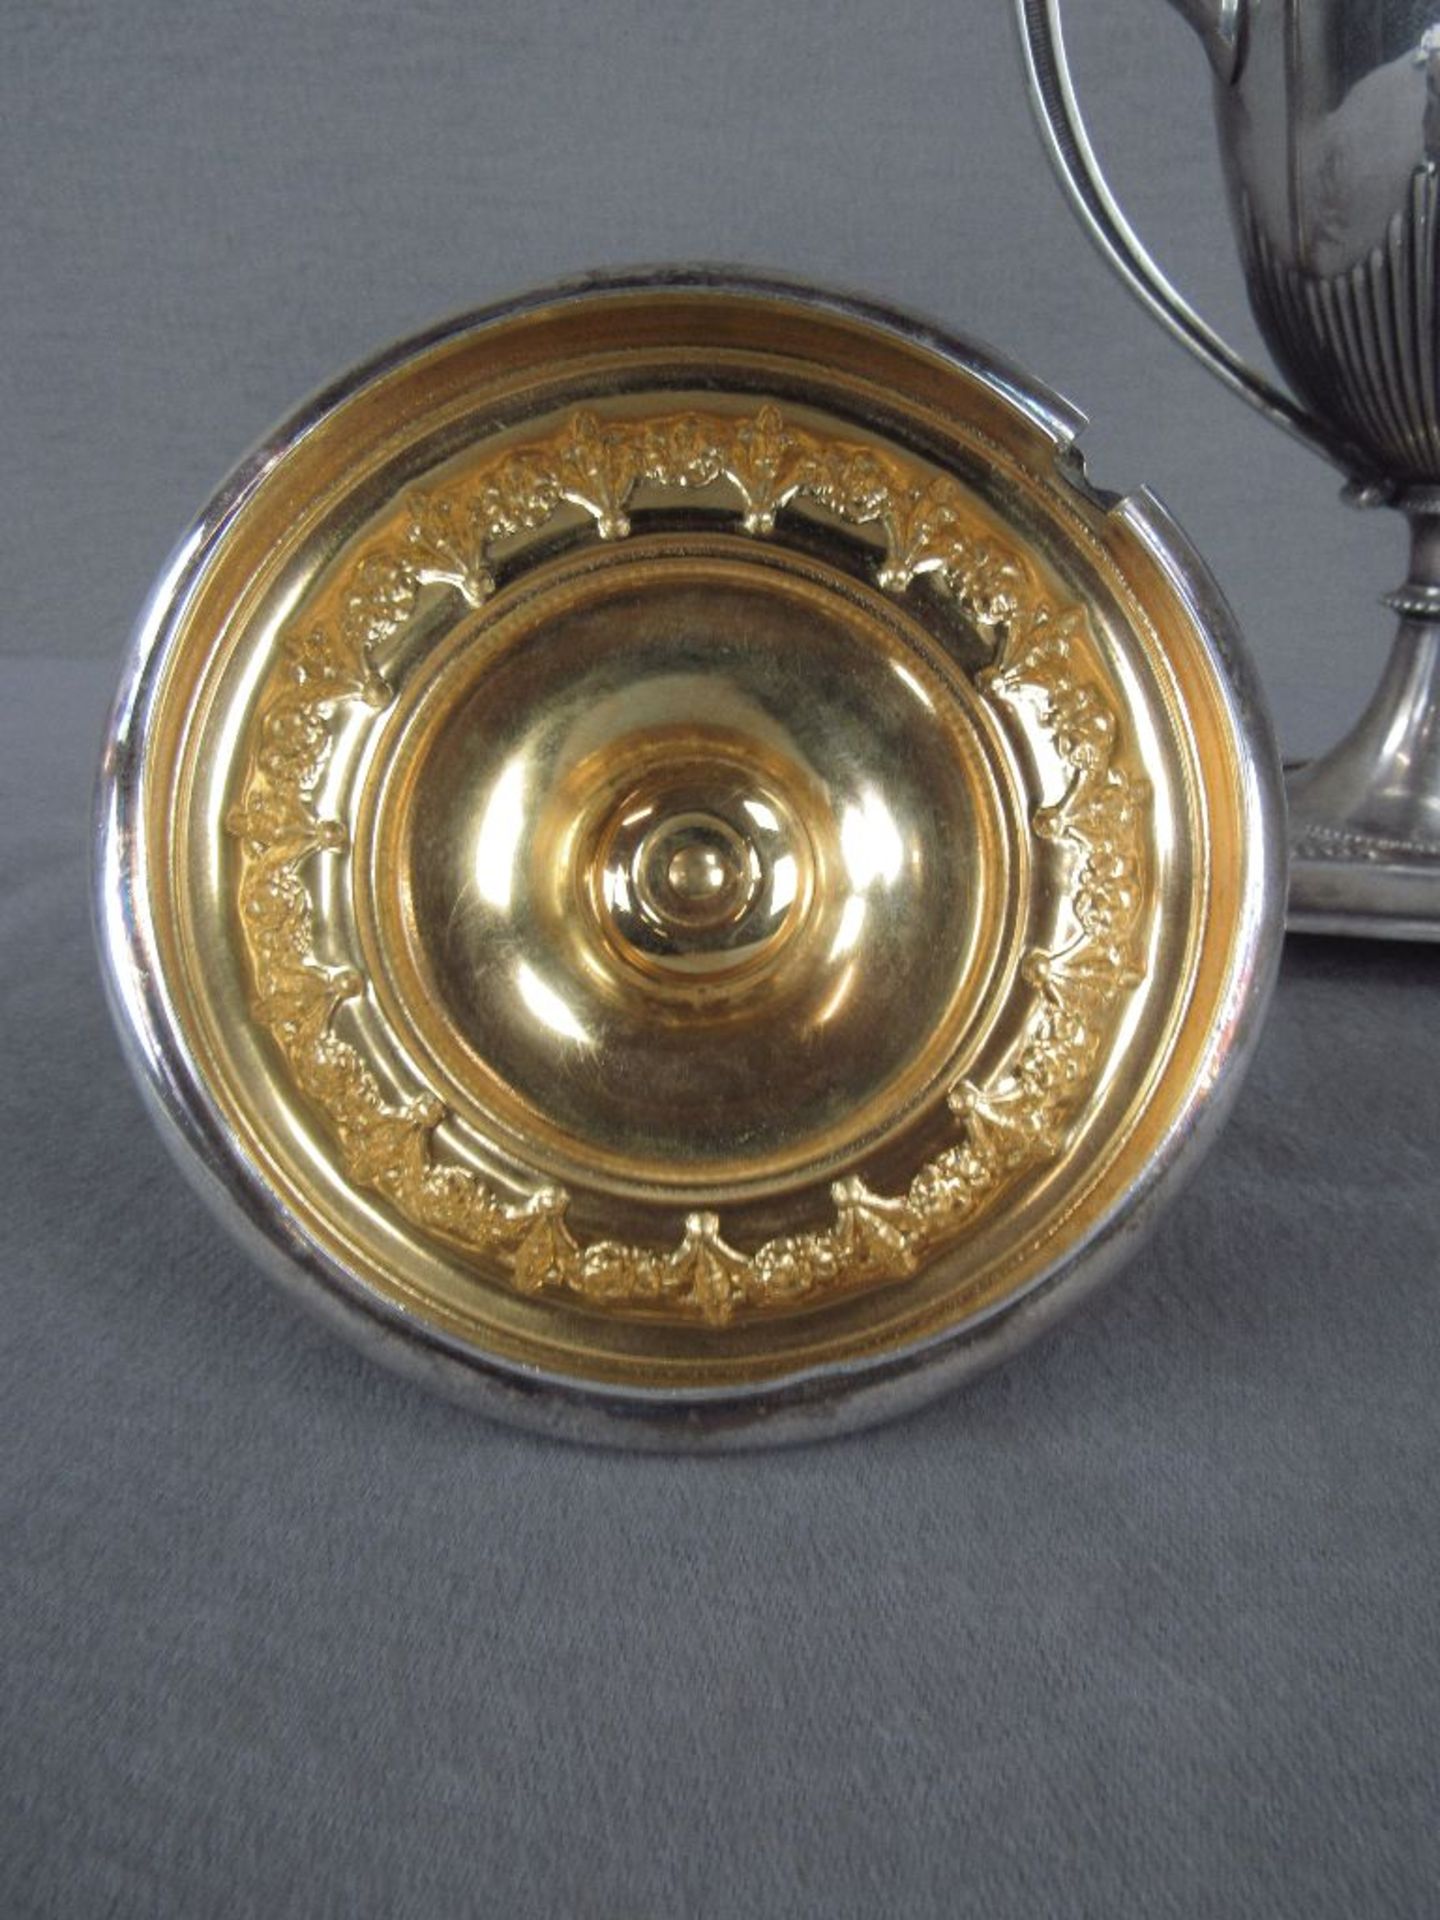 Amphorengefäß evtl Silber ungeprüft um 1910 zwei Handhaben vier Kugelfüße innen vergoldet sehr - Bild 3 aus 5